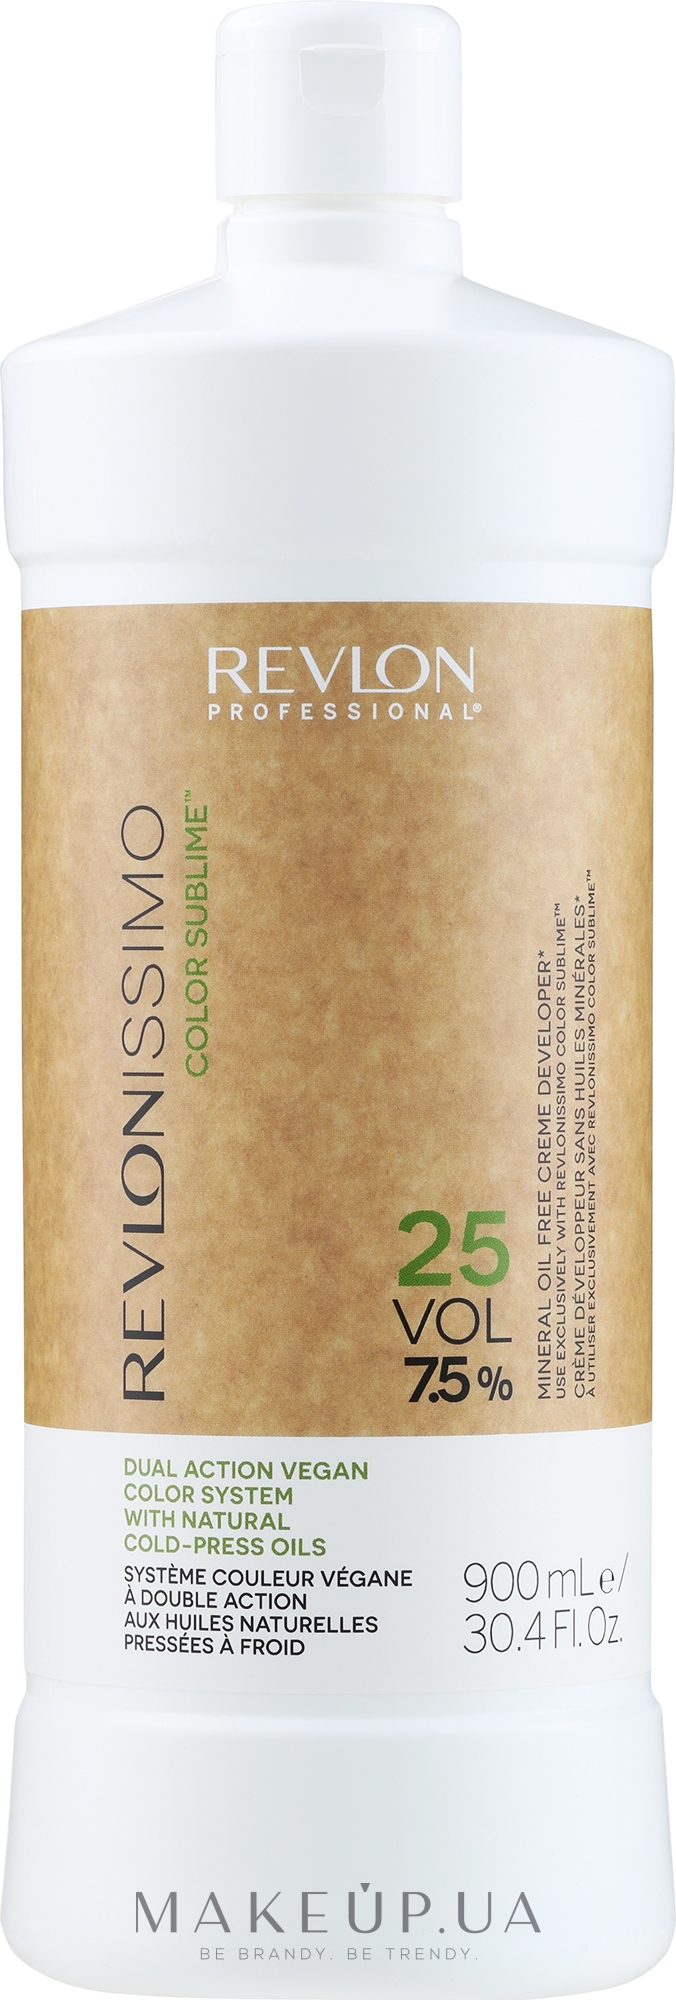 Кремоподібний окислювач 7,5% - Revlon Professional Revlonissimo Color Sublime Cream Oil Developer 25Vol — фото 900ml